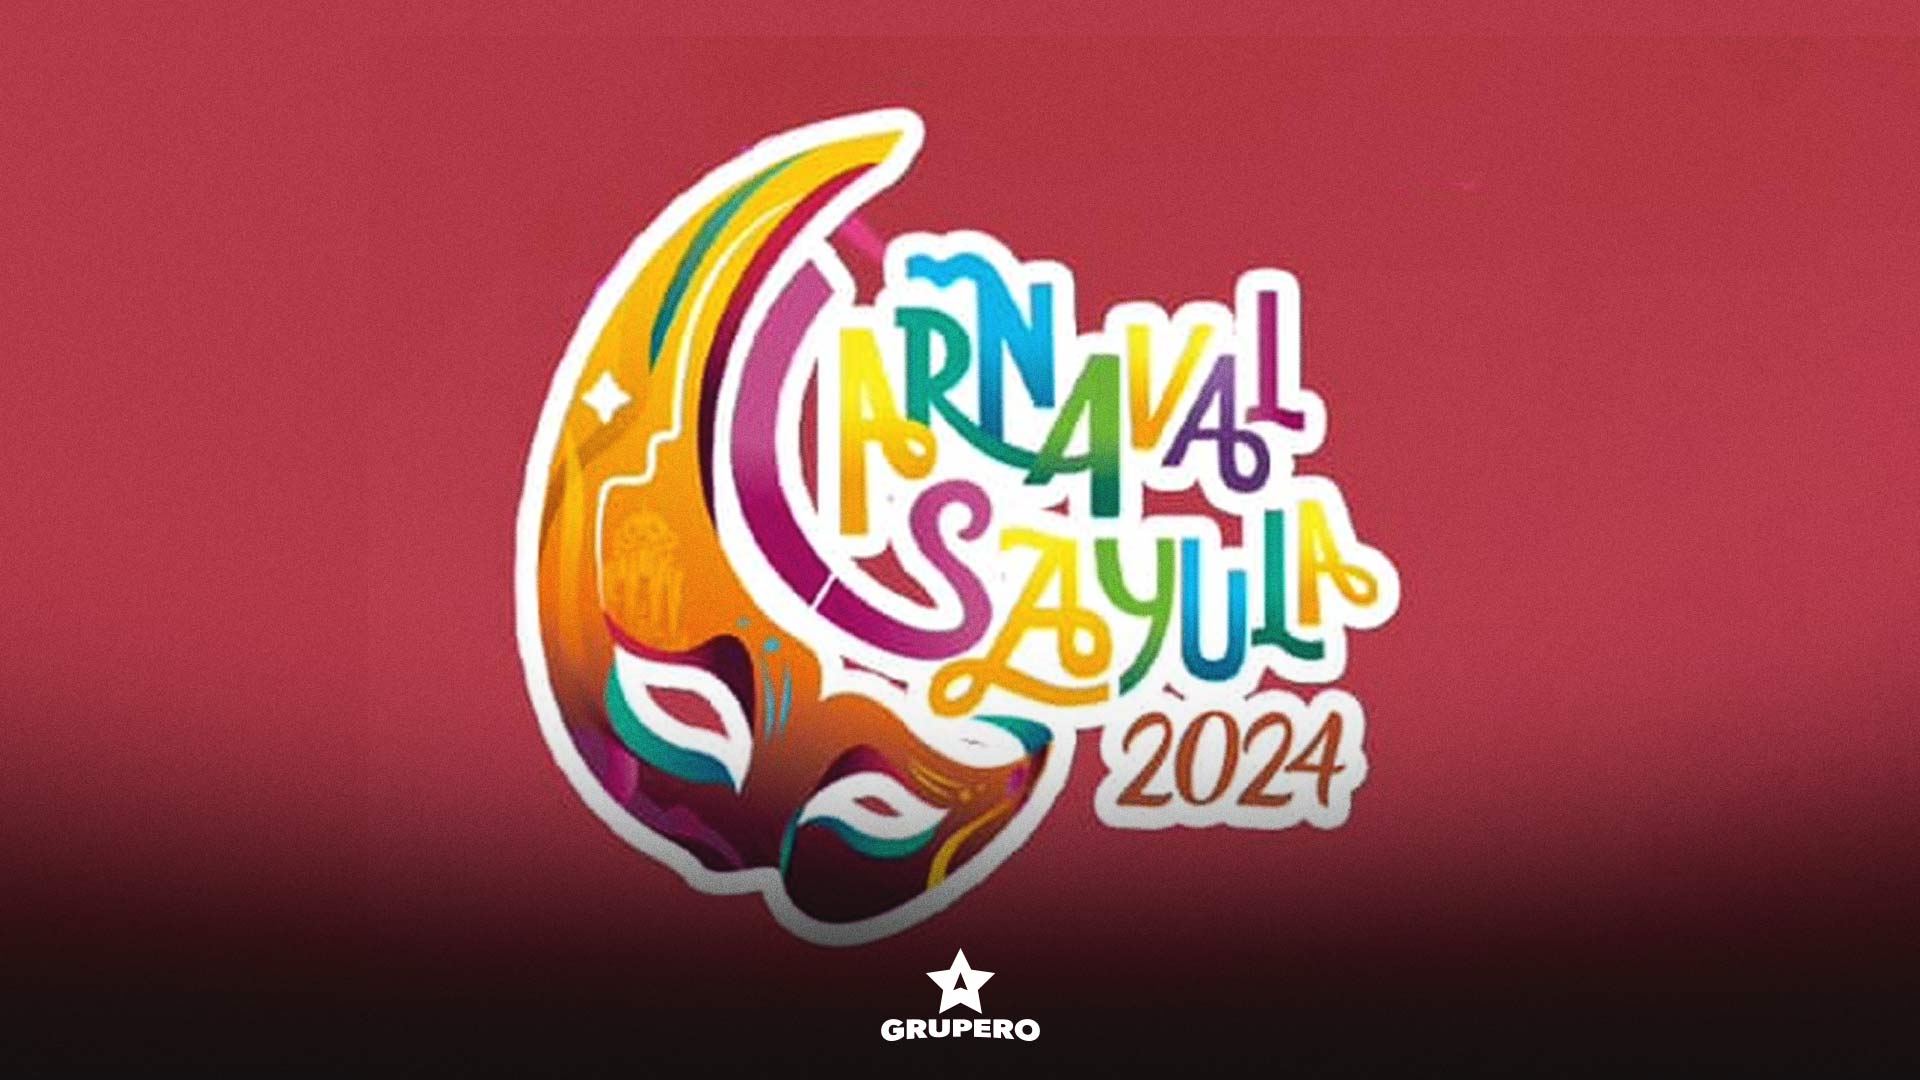 Carnaval Sayula 2024